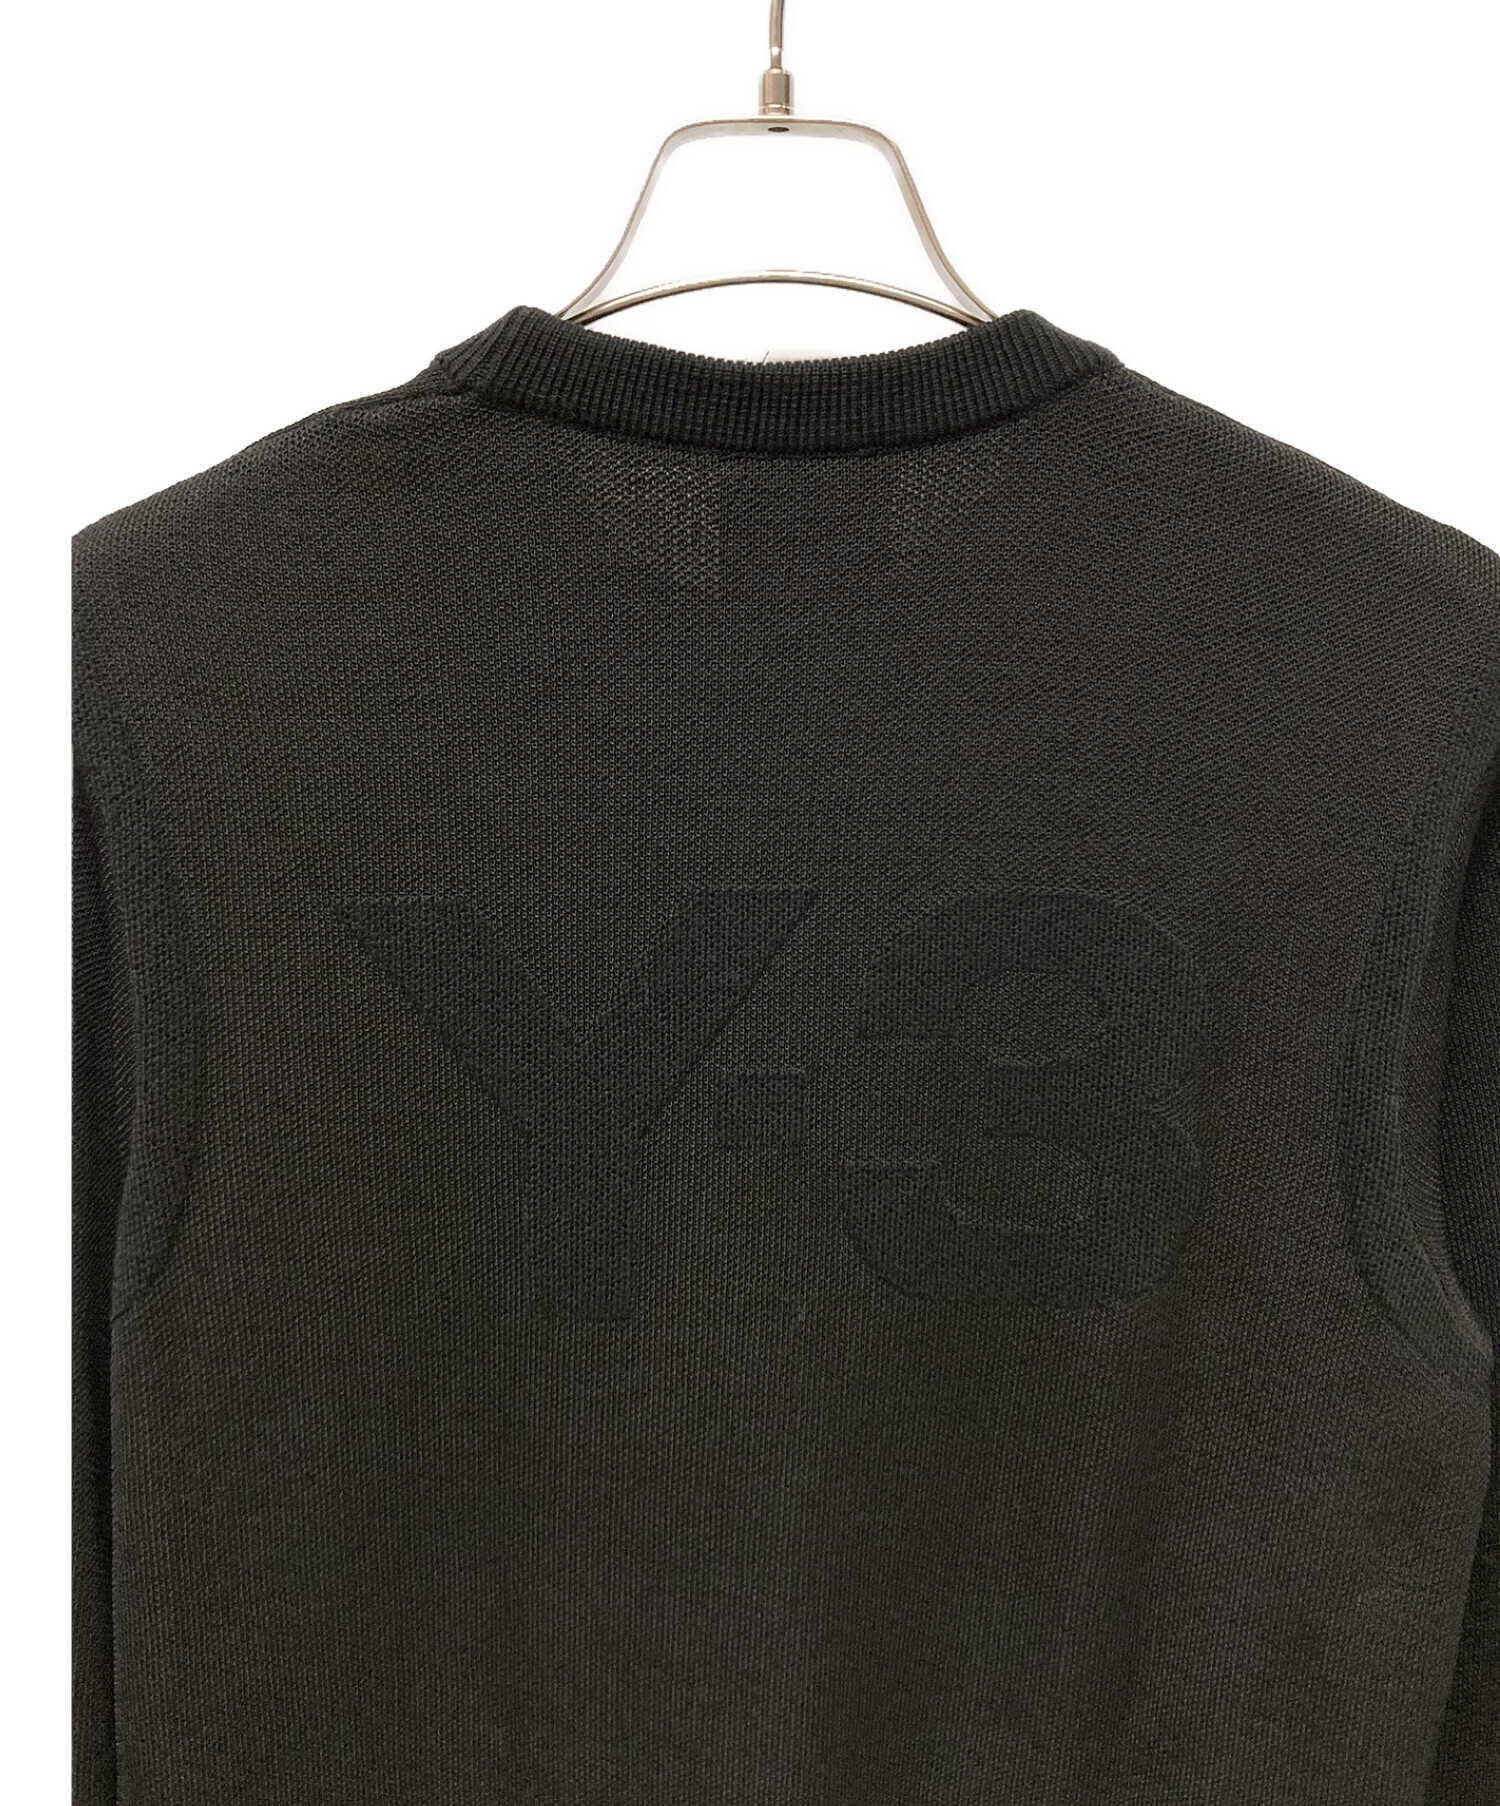 Y-3 (ワイスリー) クラシックニットクルーセーター ブラック サイズ:S 未使用品